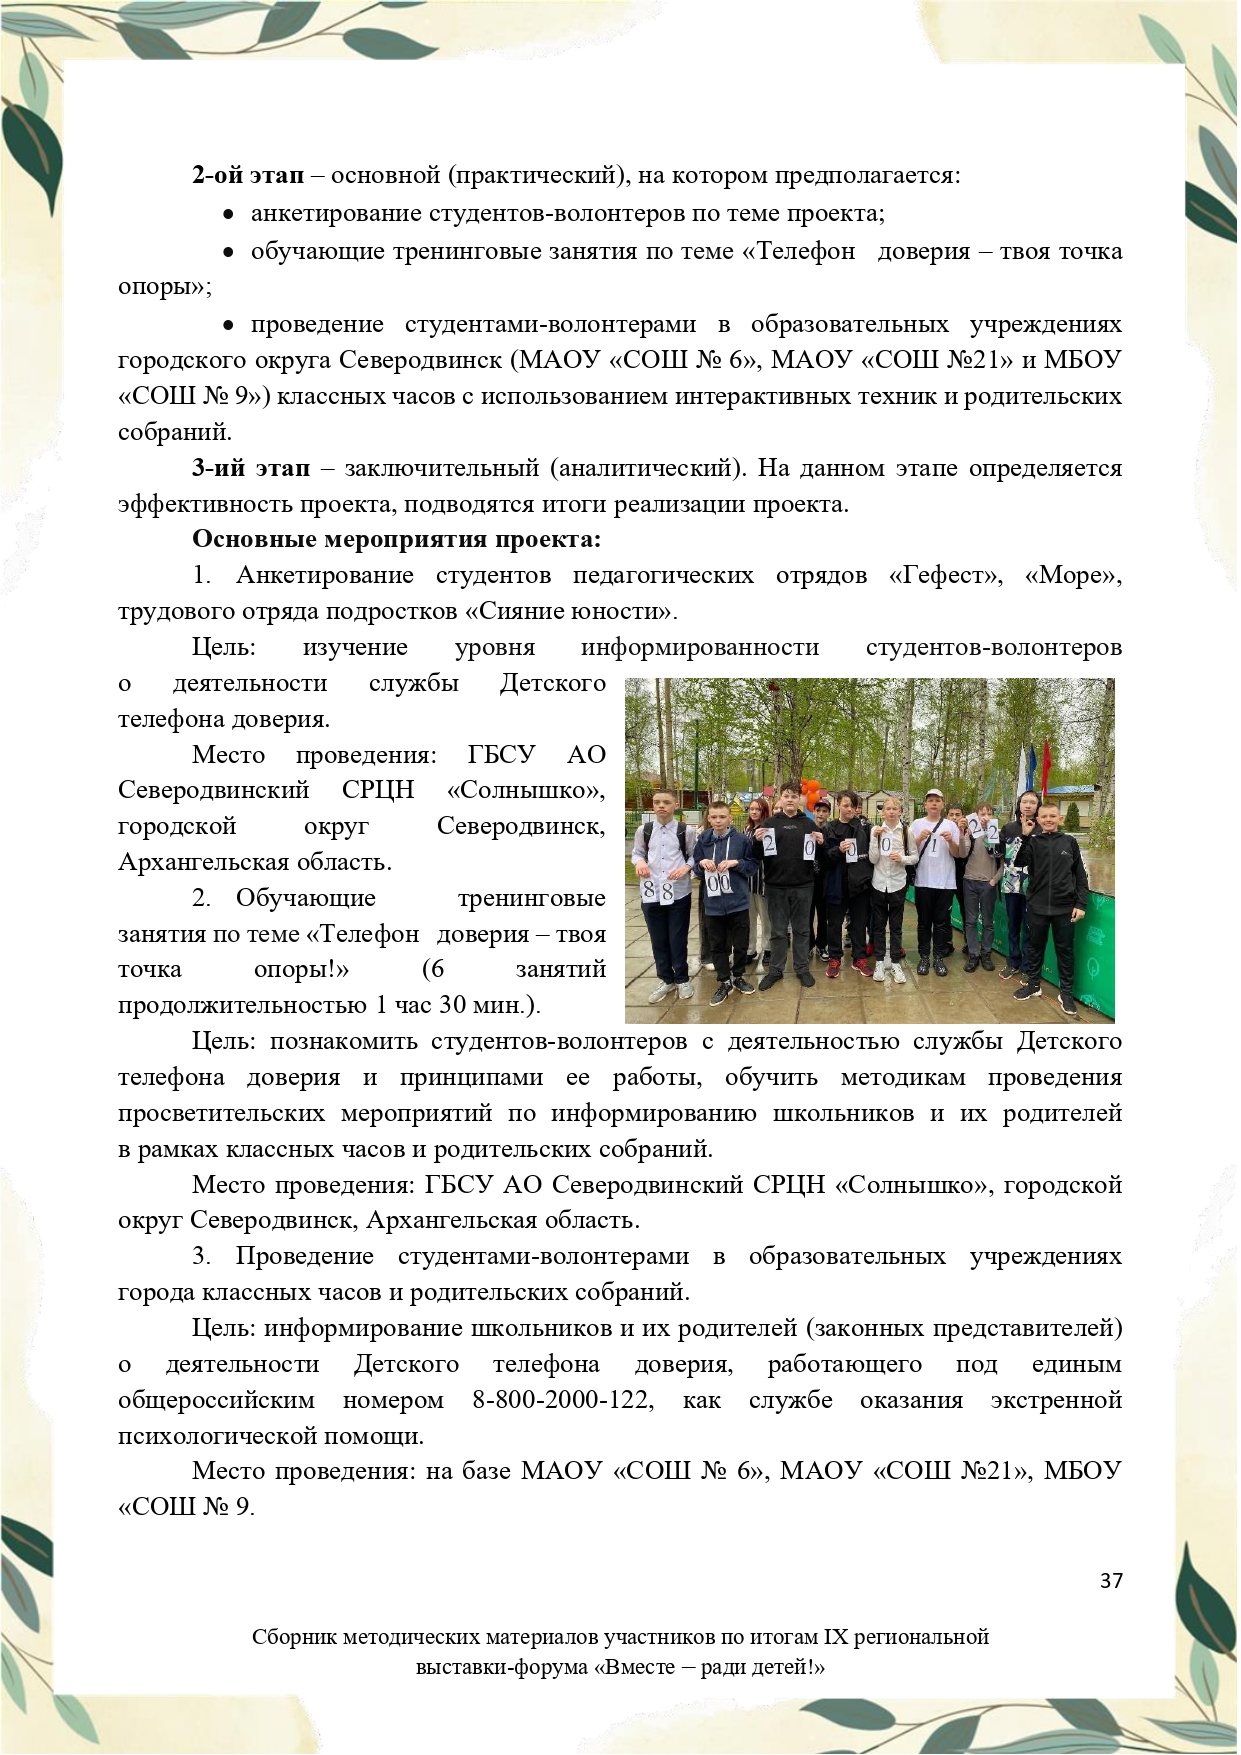 Sbornik_metodicheskikh_materialov_uchastnikov_IX_regionalnoy_vystavki-foruma_Vmeste__radi_detey_33__2023_page-0037